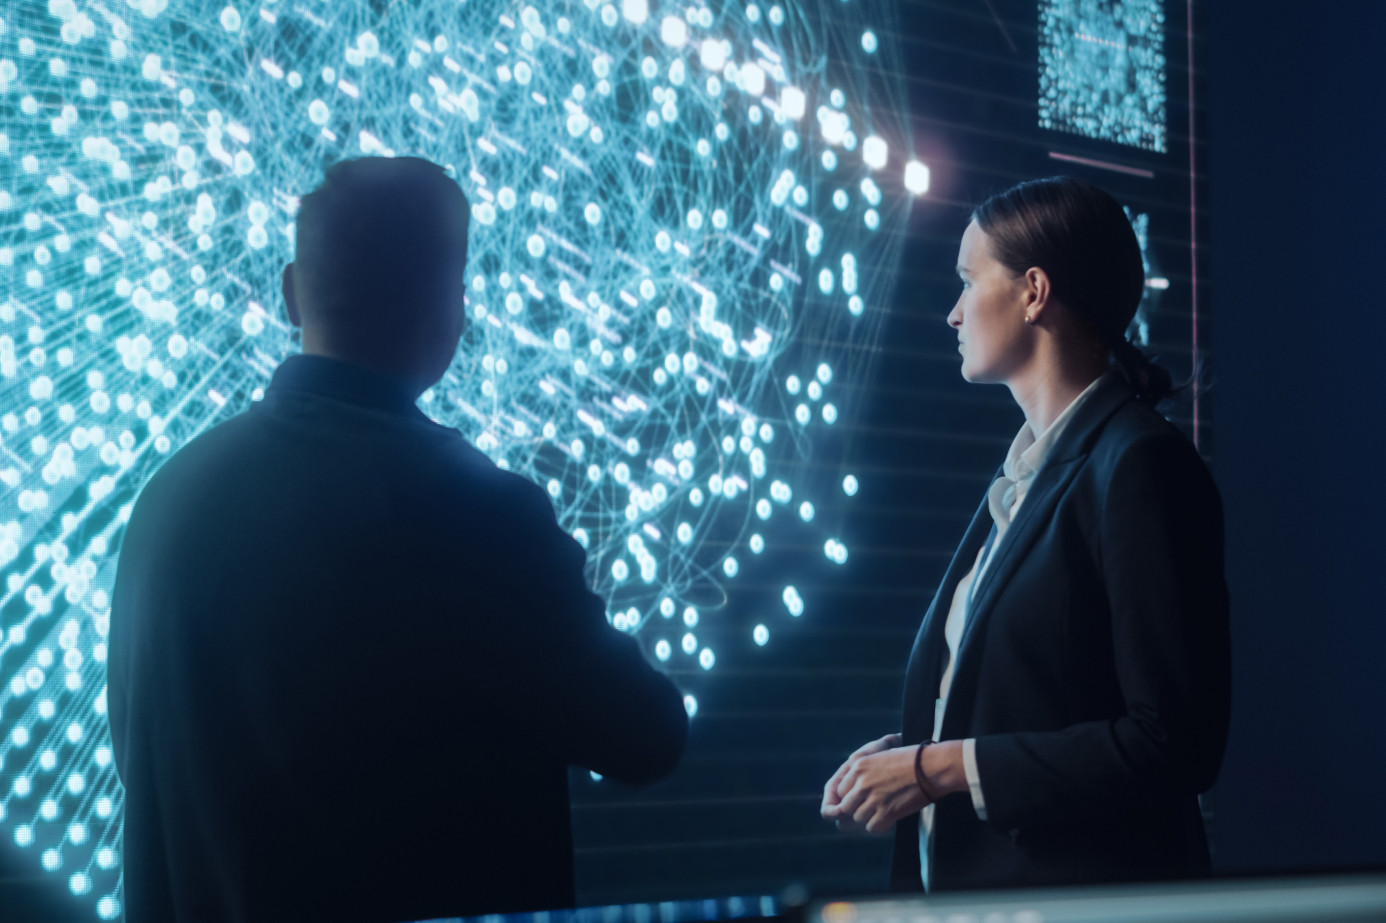 Ein Mann und eine Frau in Anzügen betrachten ein futuristisches Bild